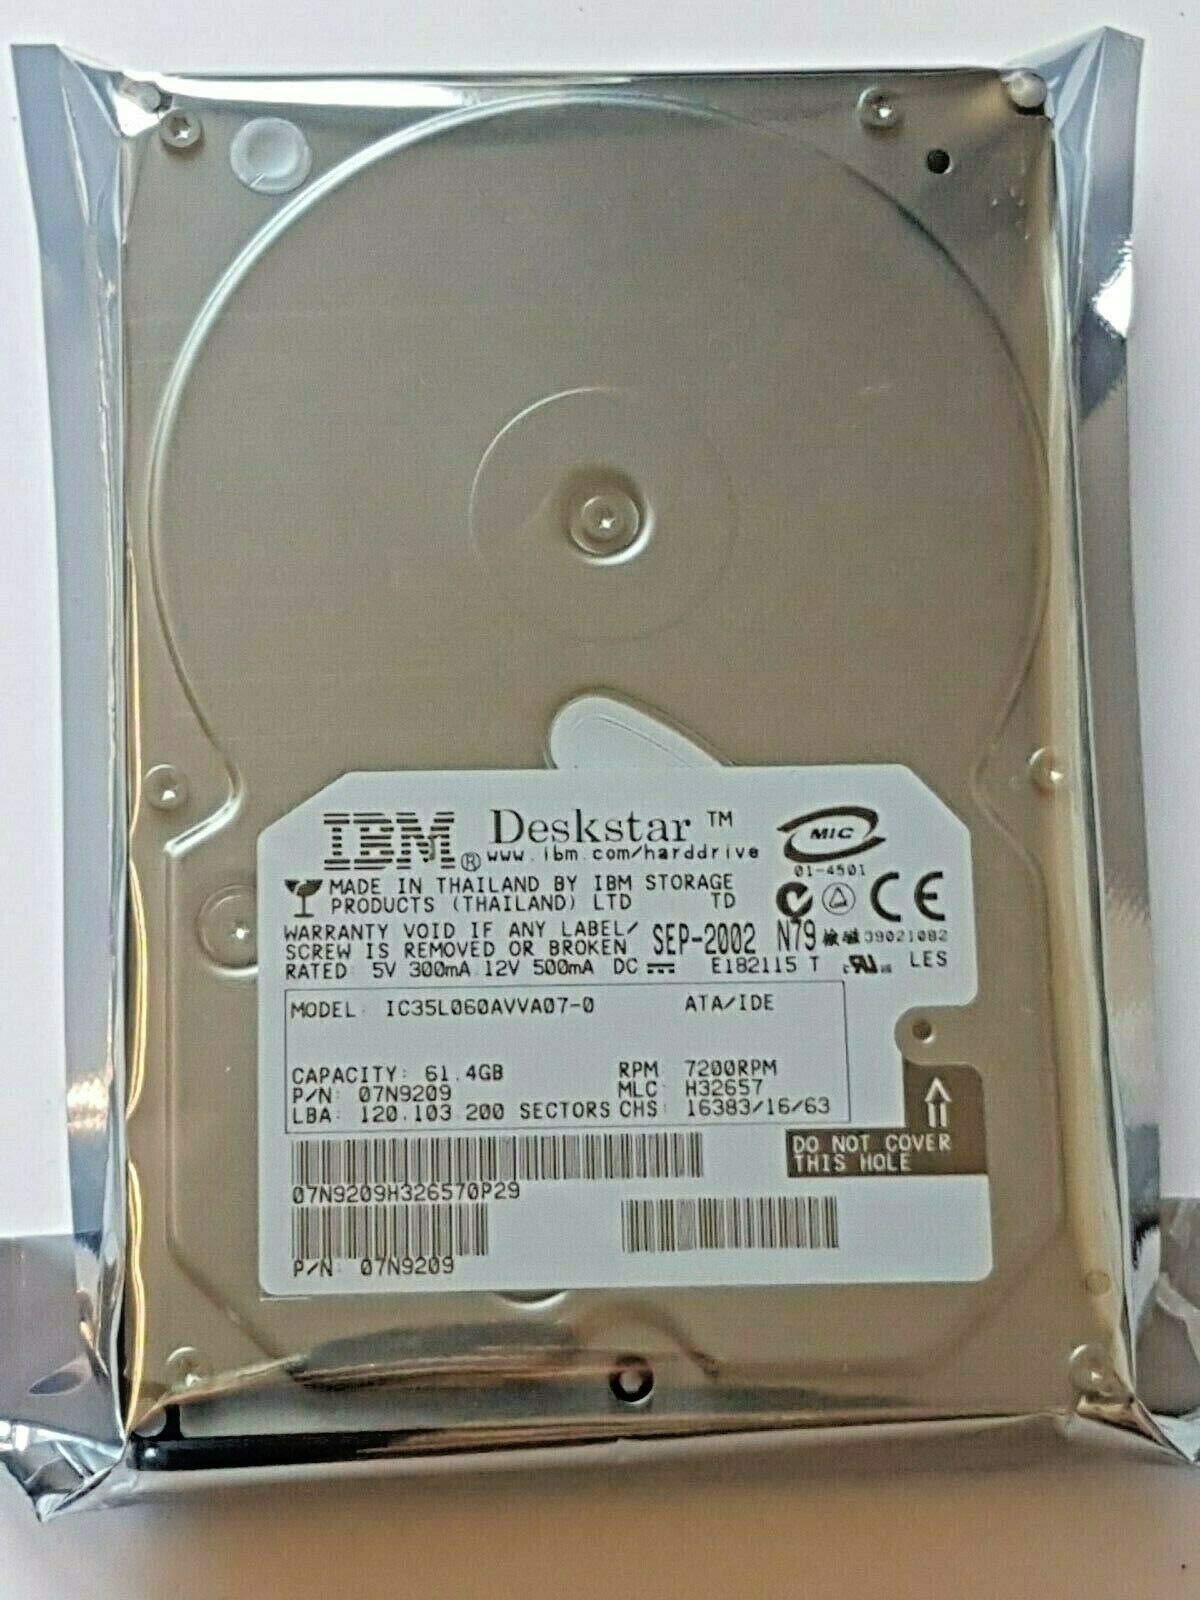 61,4 GB IDE IBM Deskstar IC35L060AVVA07-0 7200RPM HDD 2MB 3.5" Festplatte